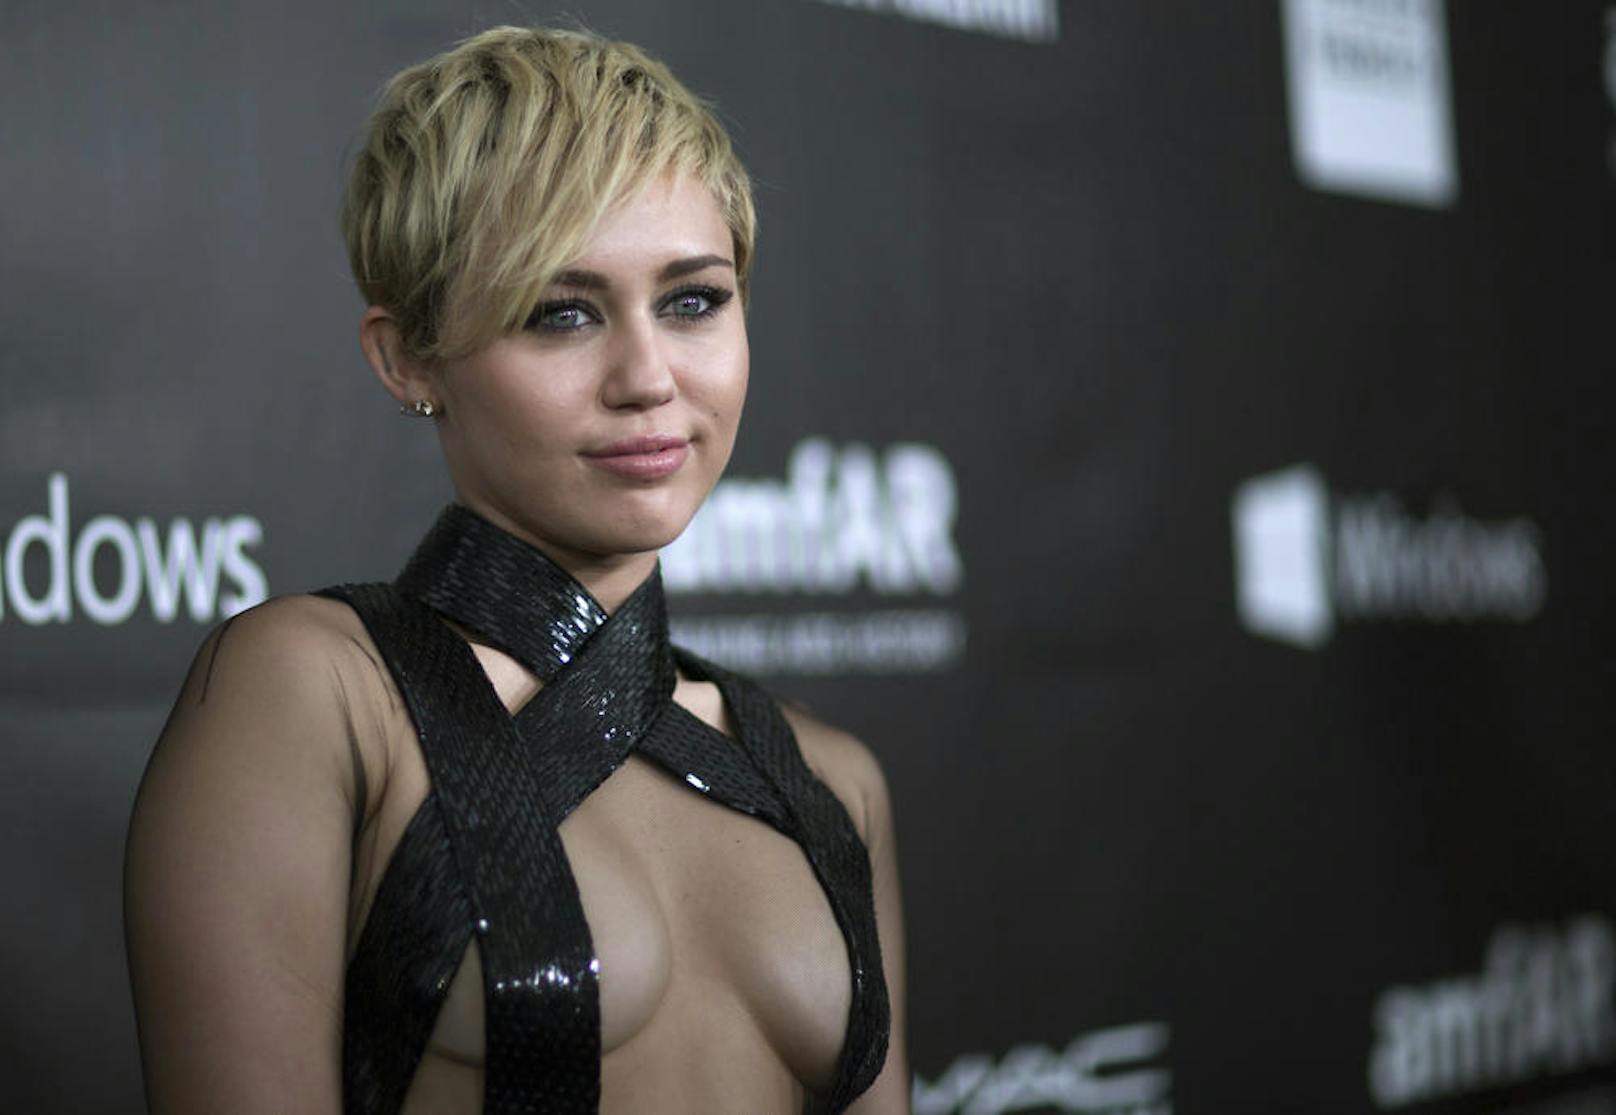 Doch es ist nicht das erste Mal, dass Miley Cyrus blank zieht.